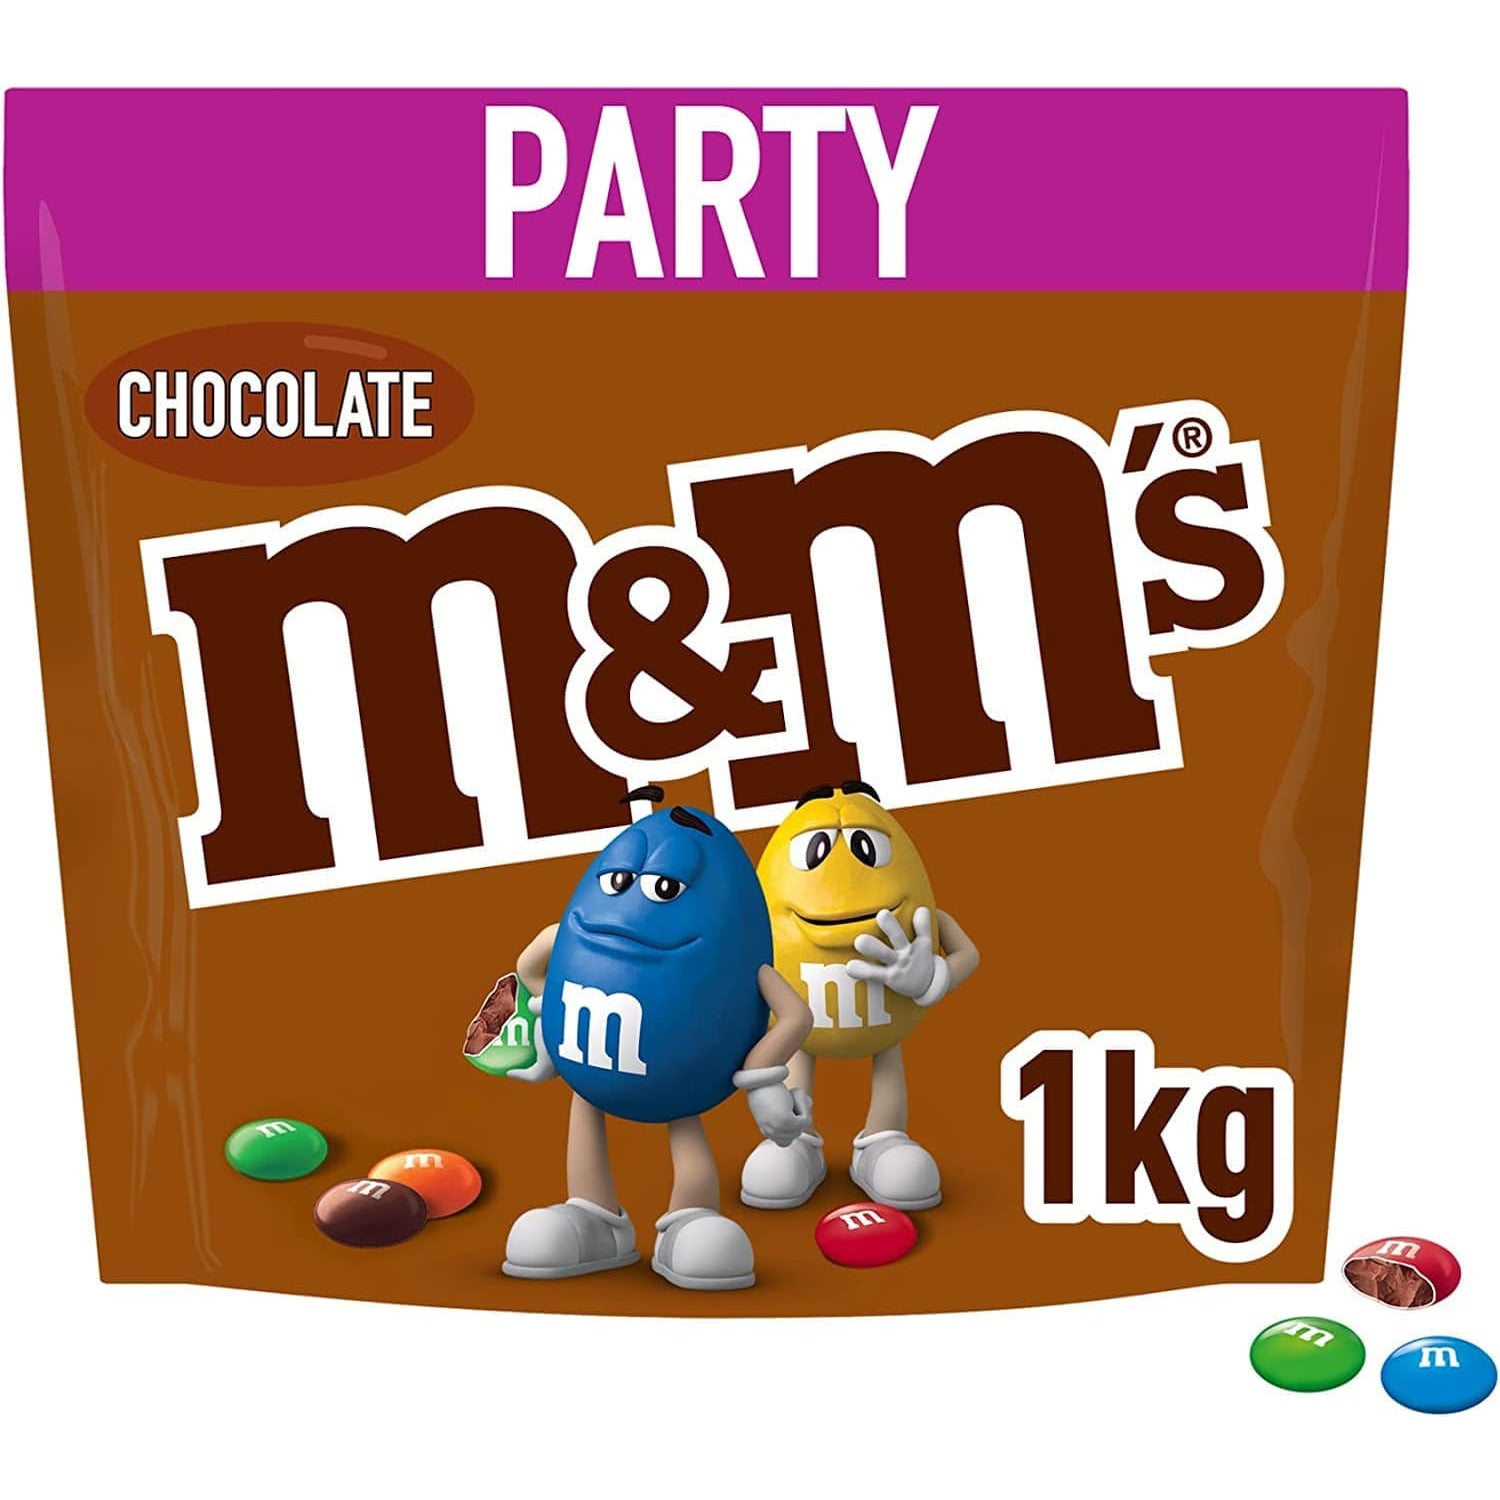 M&M's Peanut Chocolates - Bulk Packs 1kg